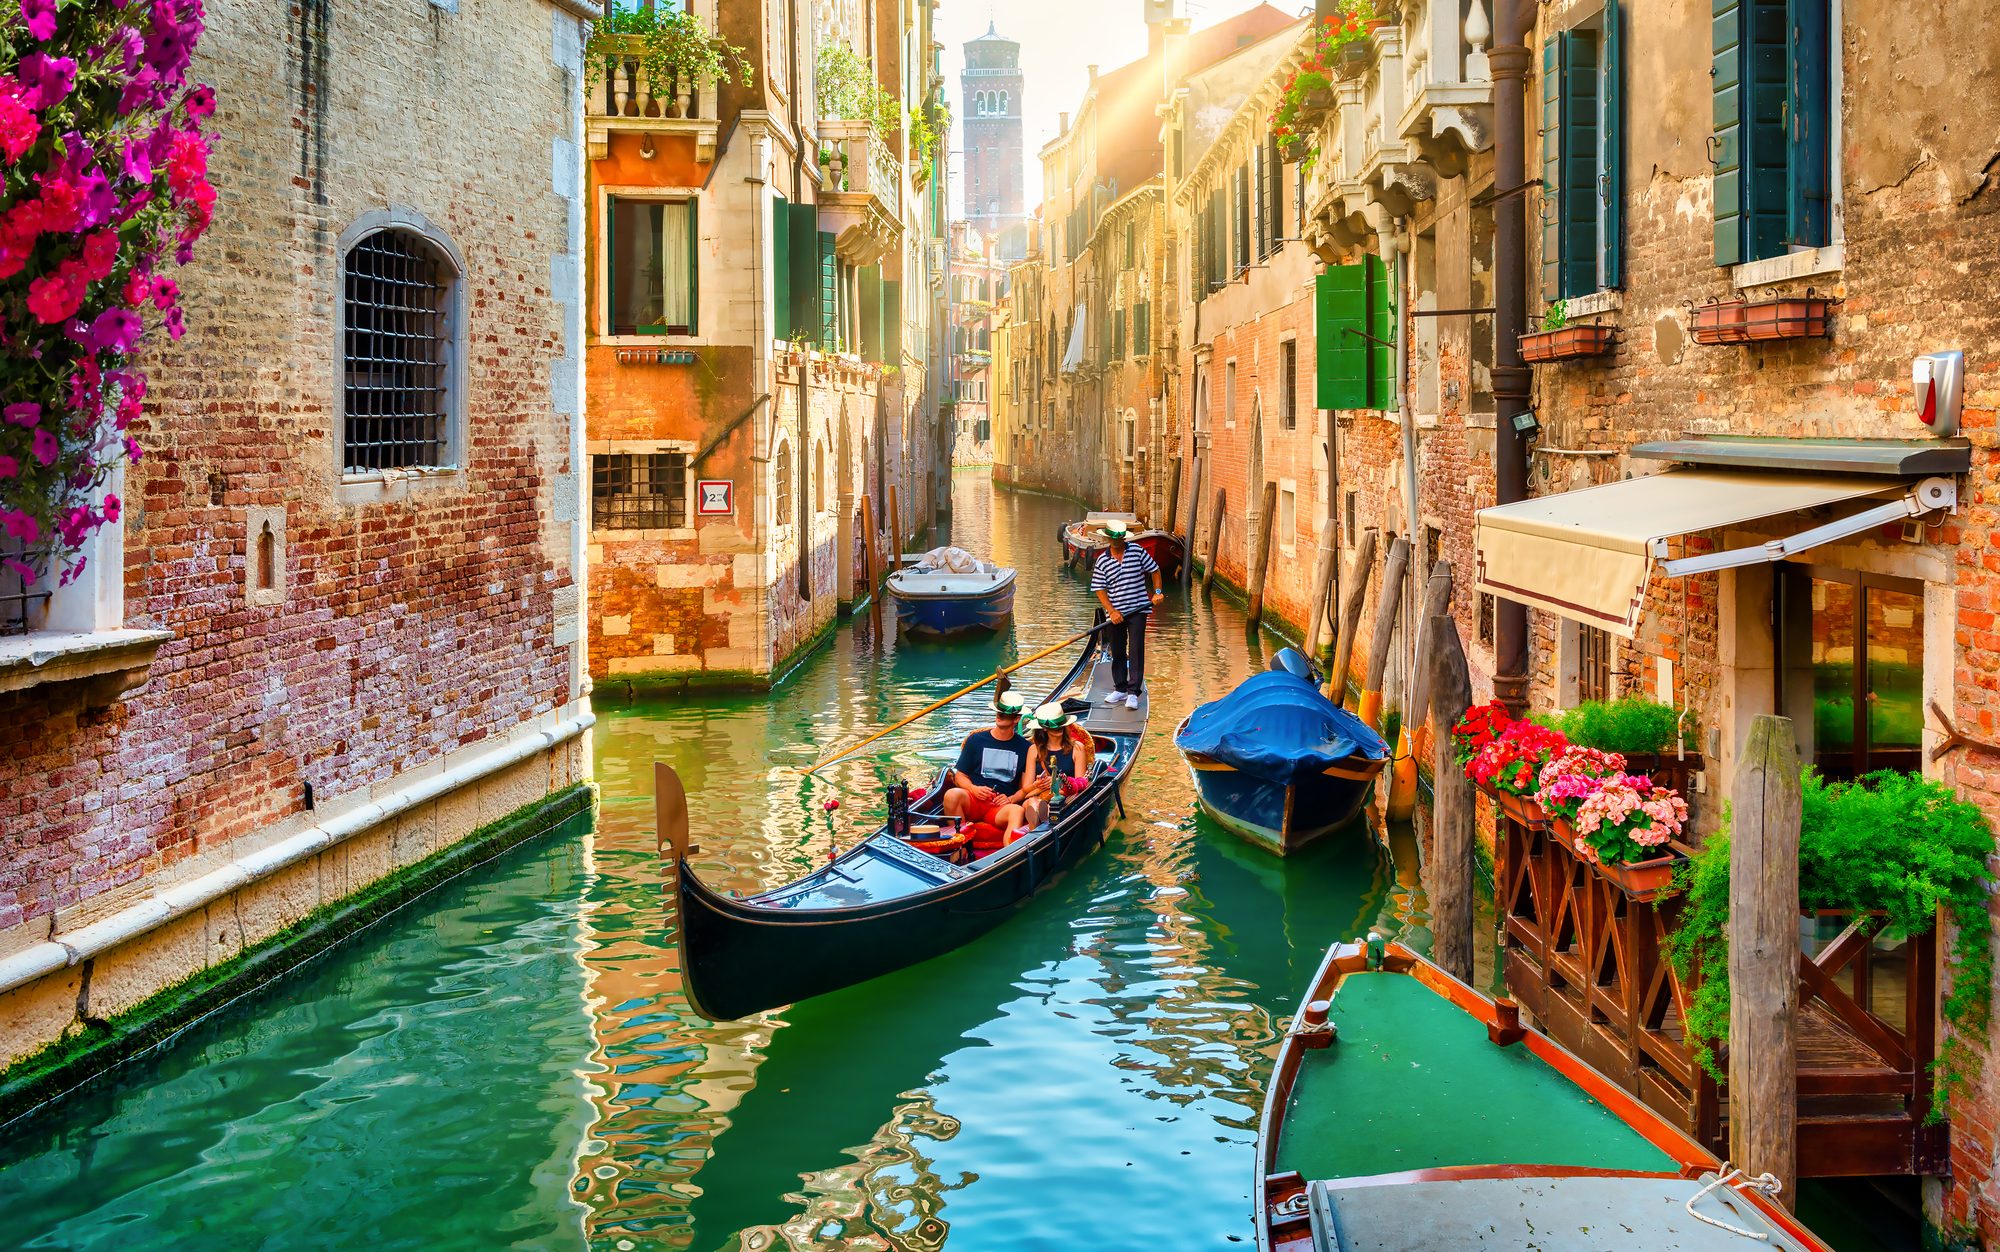 Gondel mit zwei Personen auf hellgrünem Wasser im Kanal von Venedig